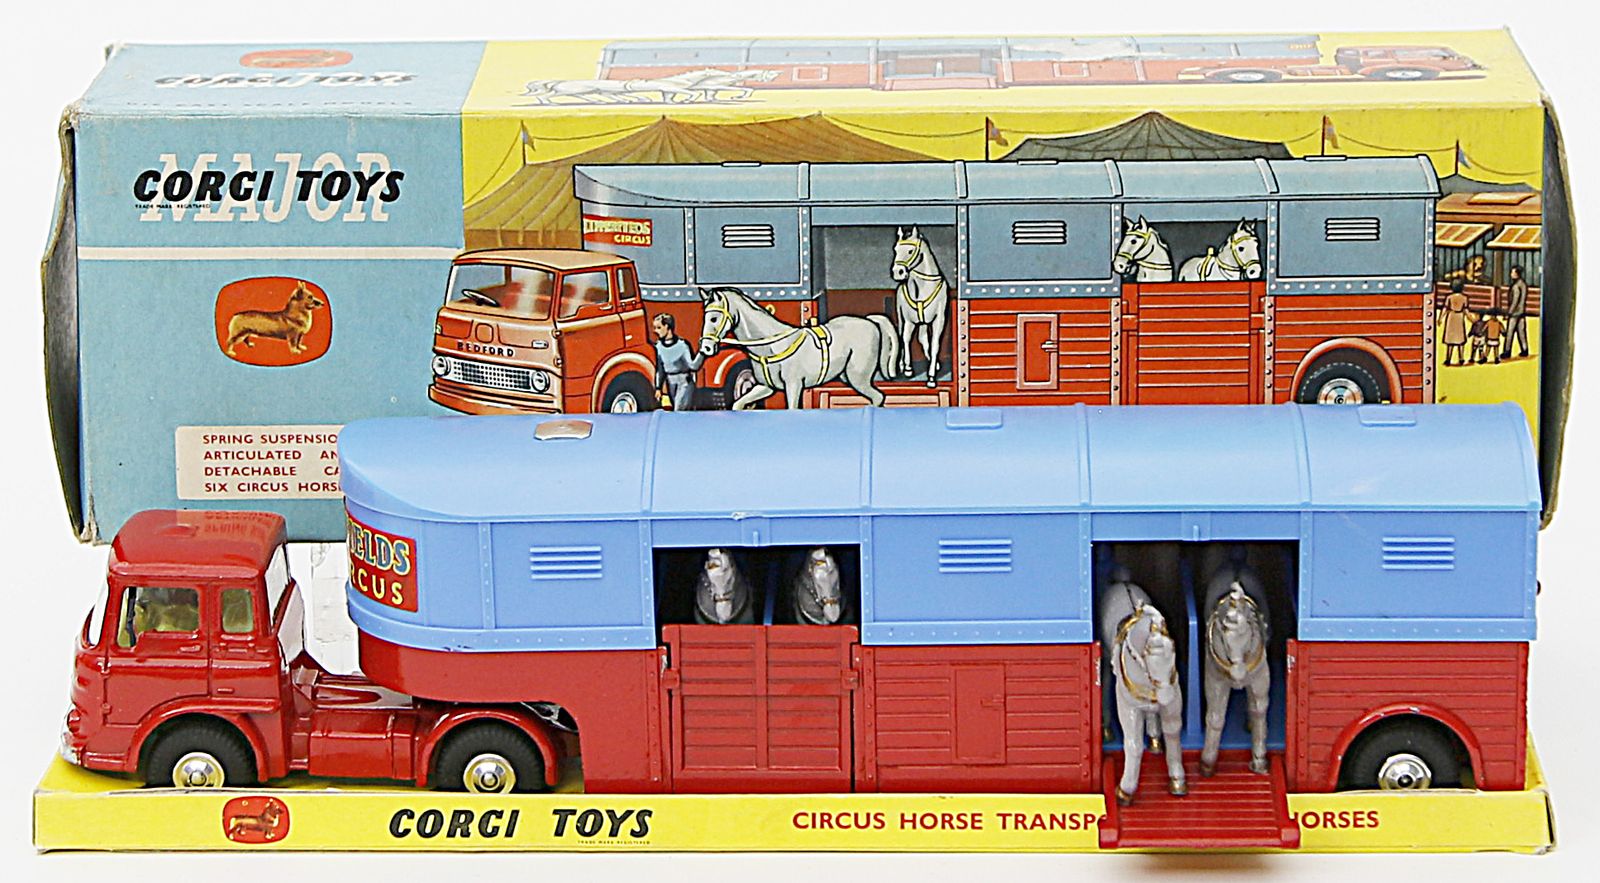 Zirkus-Pferdetransporter mit Pferden, Corgi Toys.